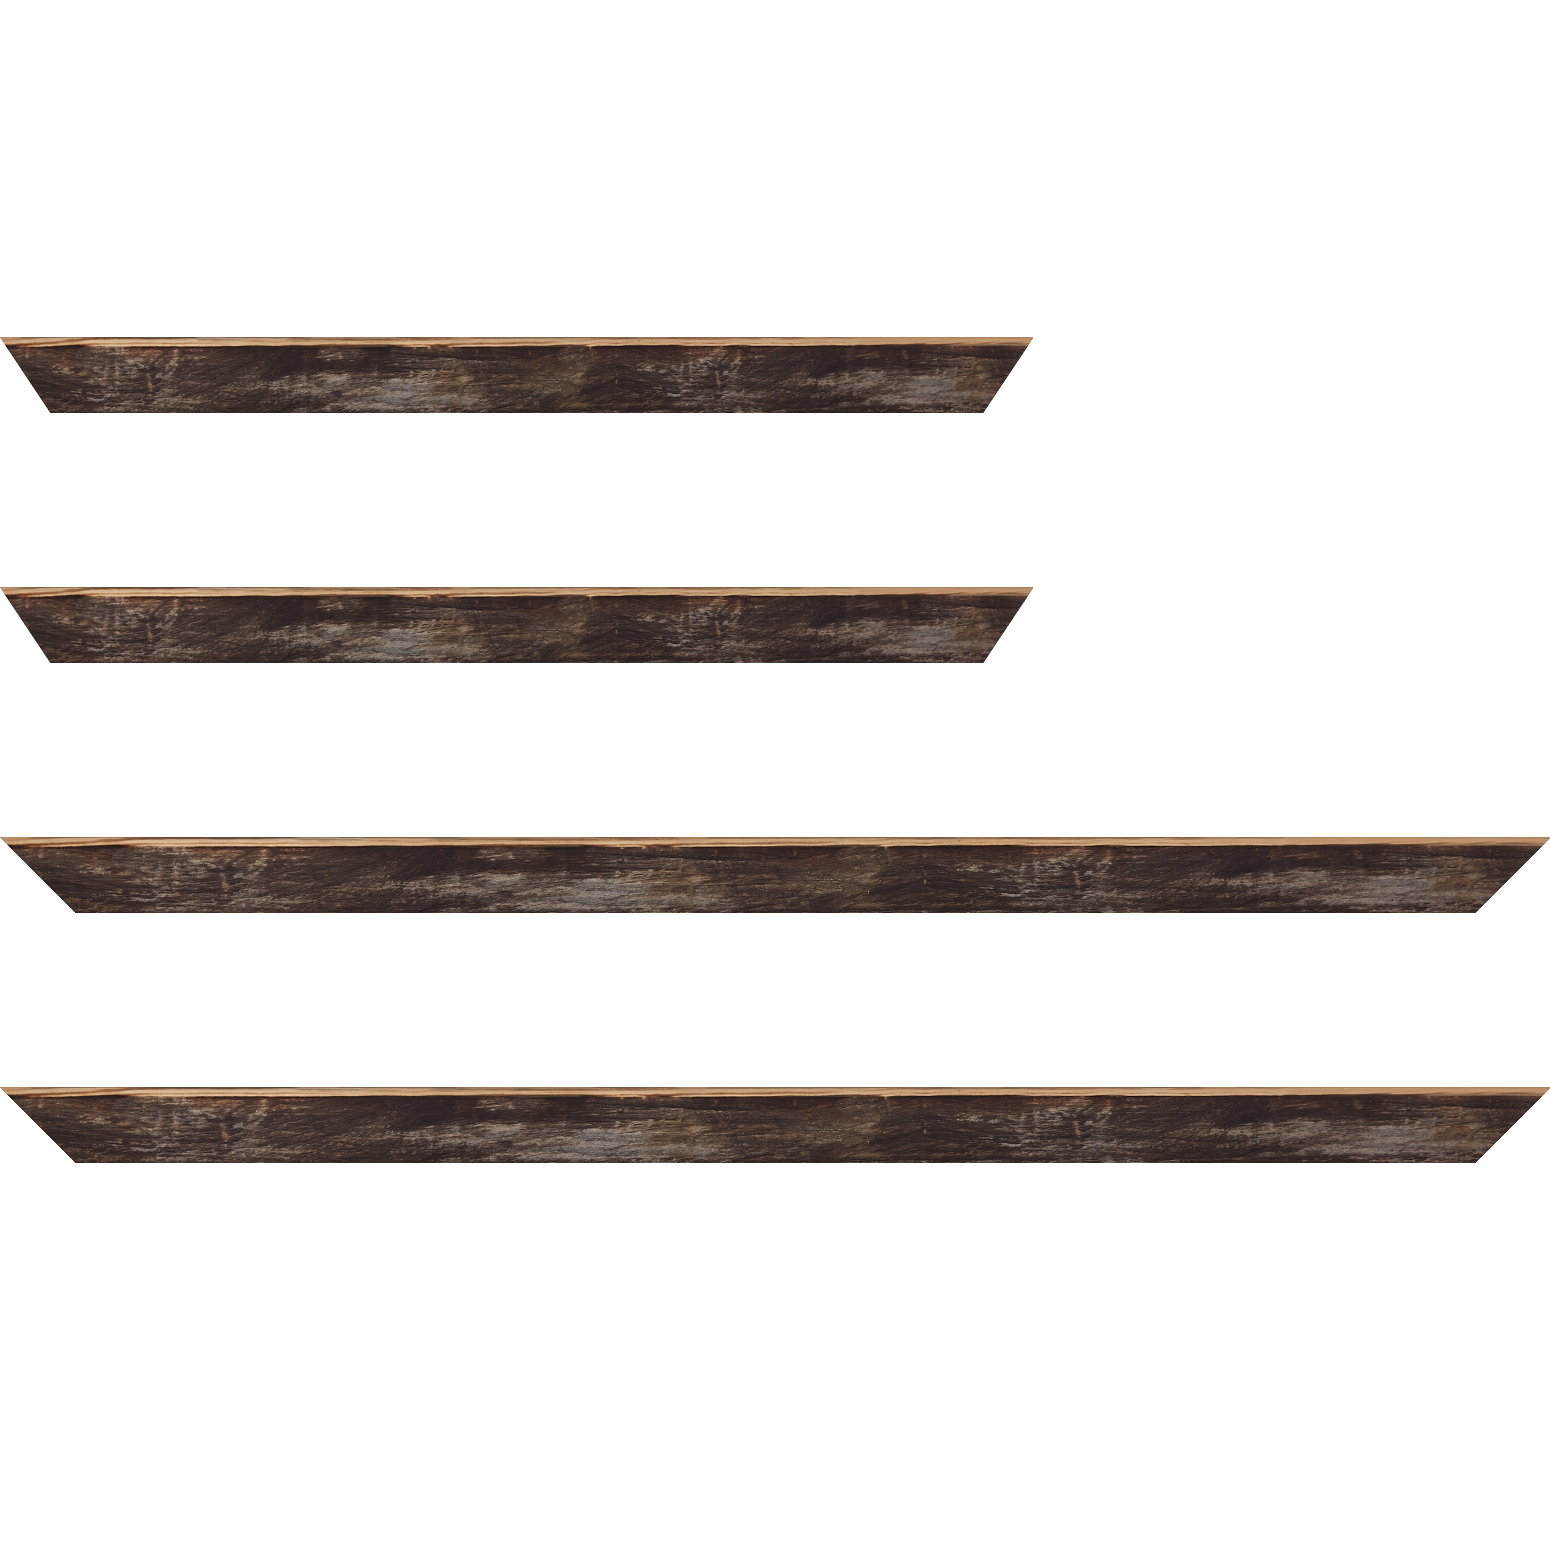 Baguette bois profil arrondi en pente plongeant largeur 2.4cm couleur noir ébène effet ressuyé, angle du cadre extérieur filet naturel - 35x24